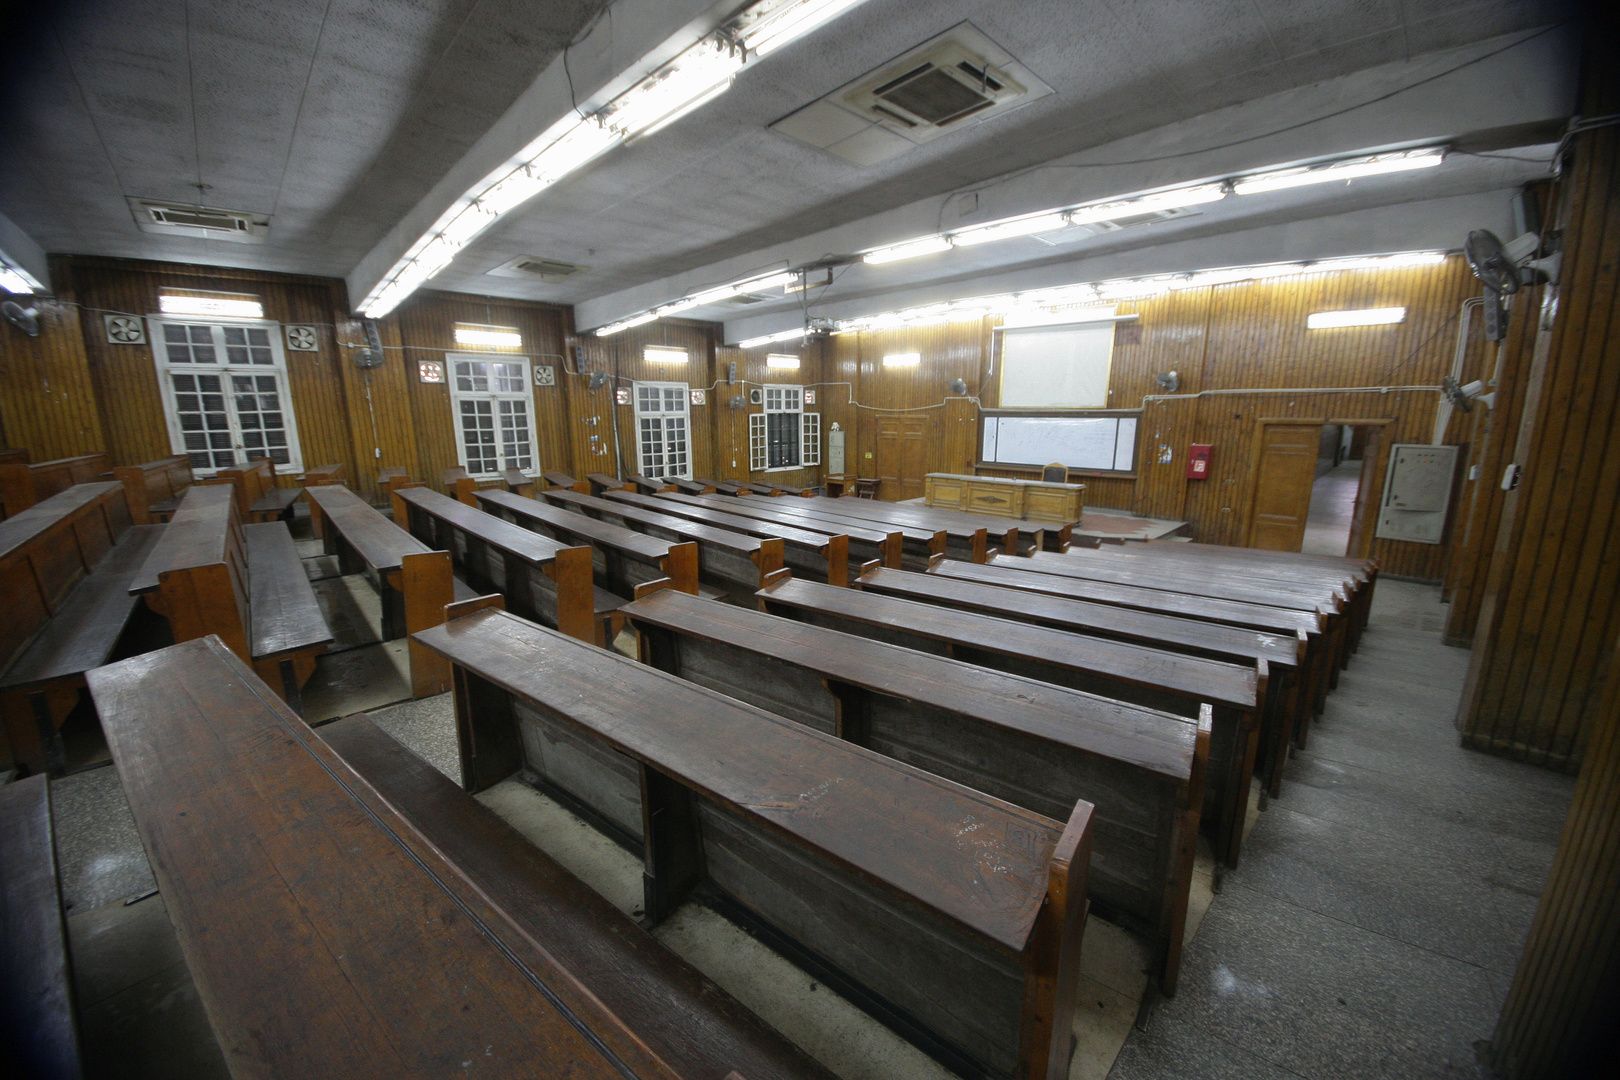 توضيح للحكومة المصرية بشأن معلومات متداولة حول طلبة الجامعات